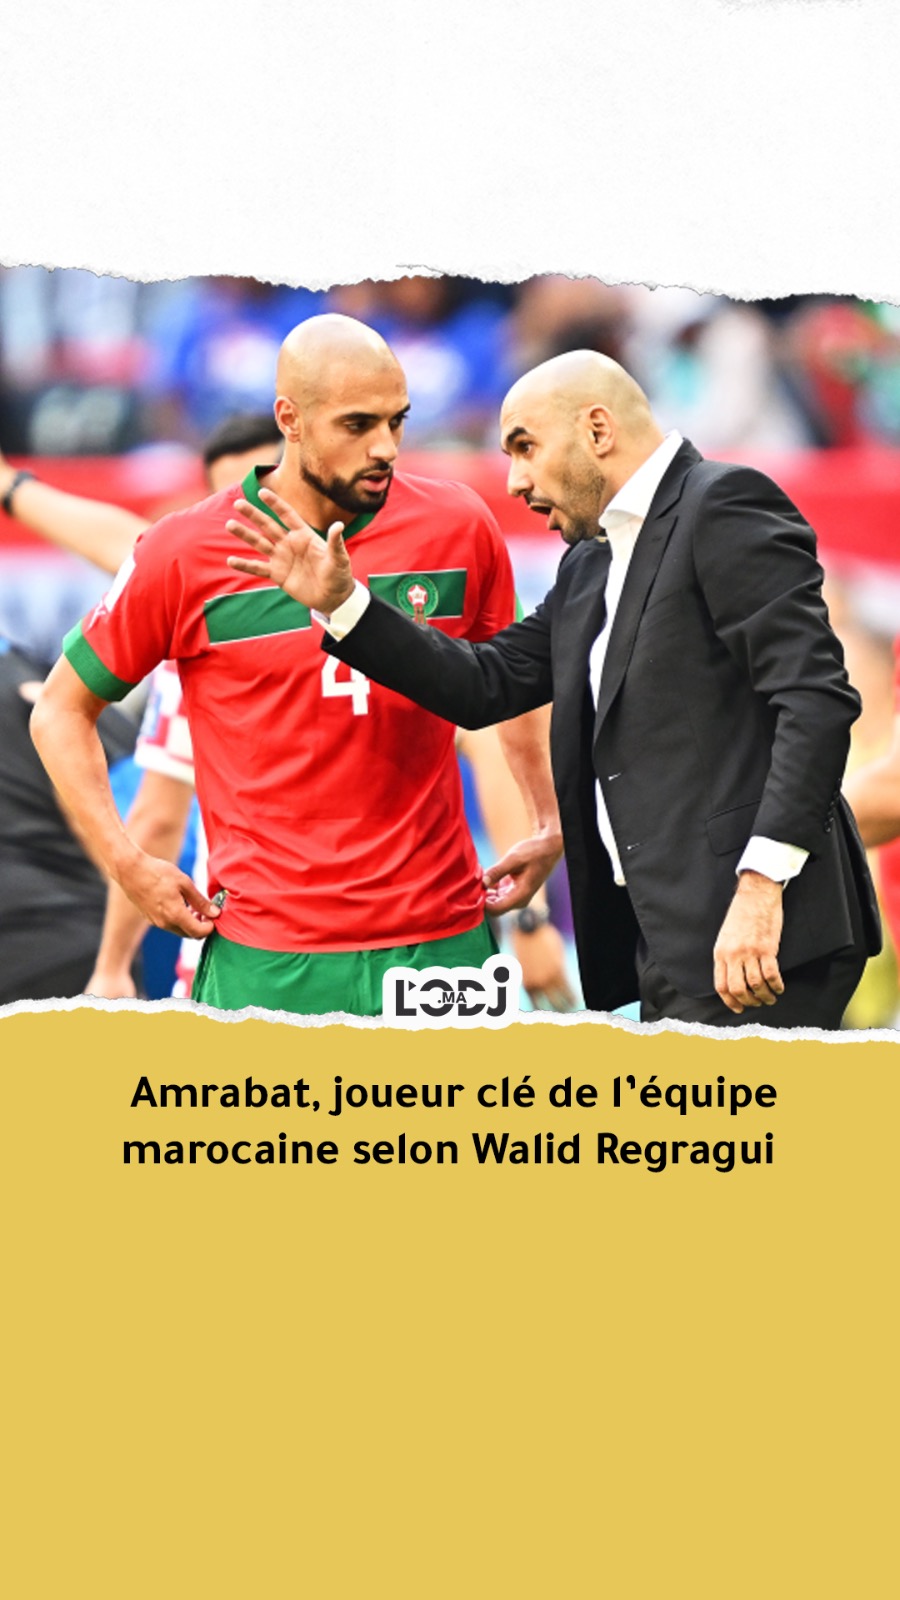 Amrabat, joueur clé de l’équipe marocaine selon Walid Regragui